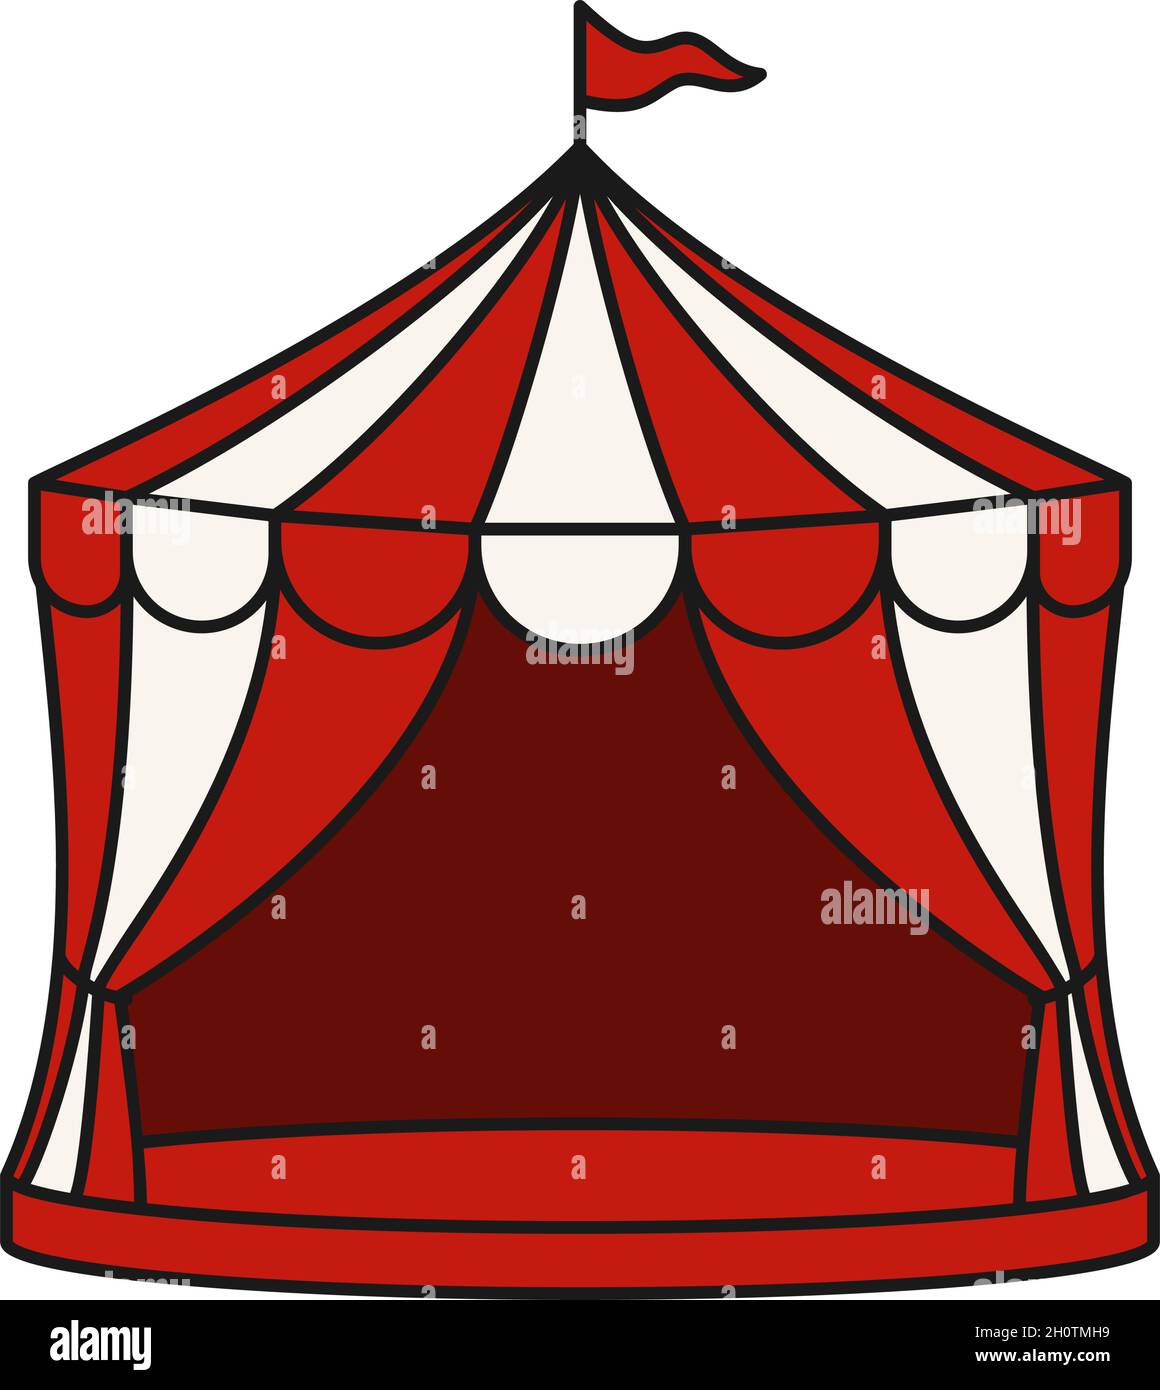 Tente de cirque avec drapeau pour le carnaval ou spectacle en rouge et blanc icône de vecteur Illustration de Vecteur